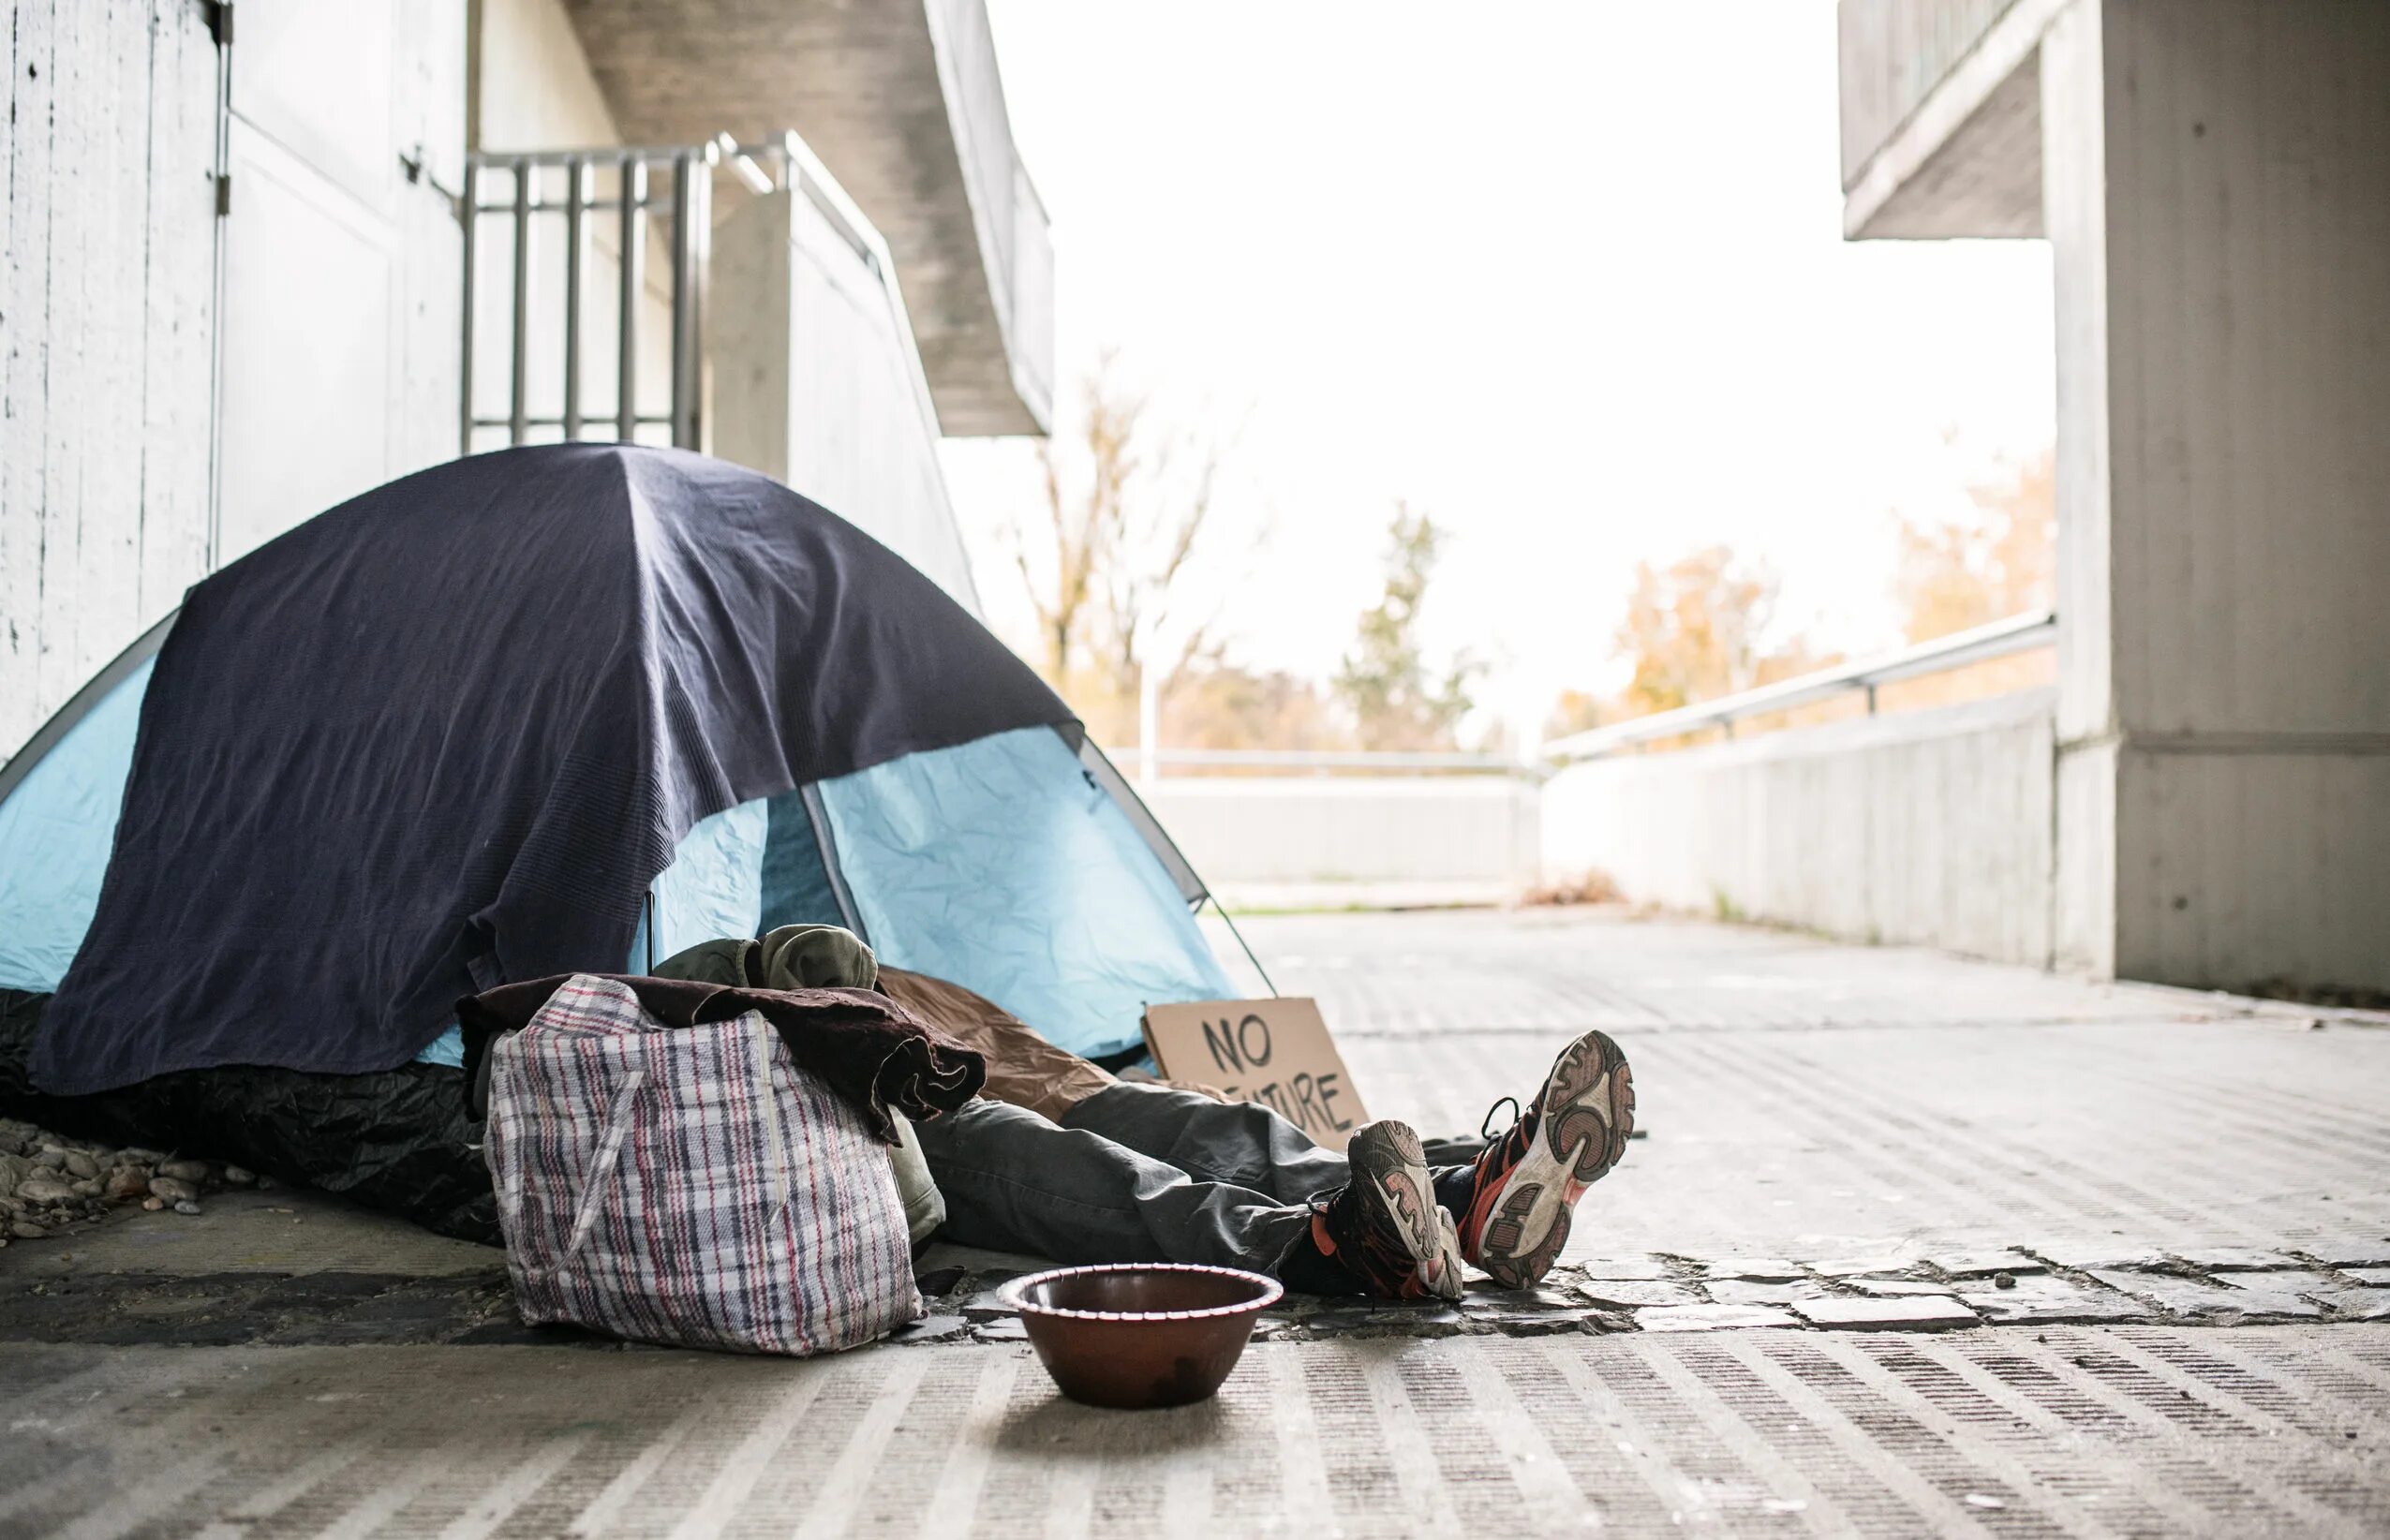 Бомжи в палатке. Палатки бездомных. Вещи на улице.